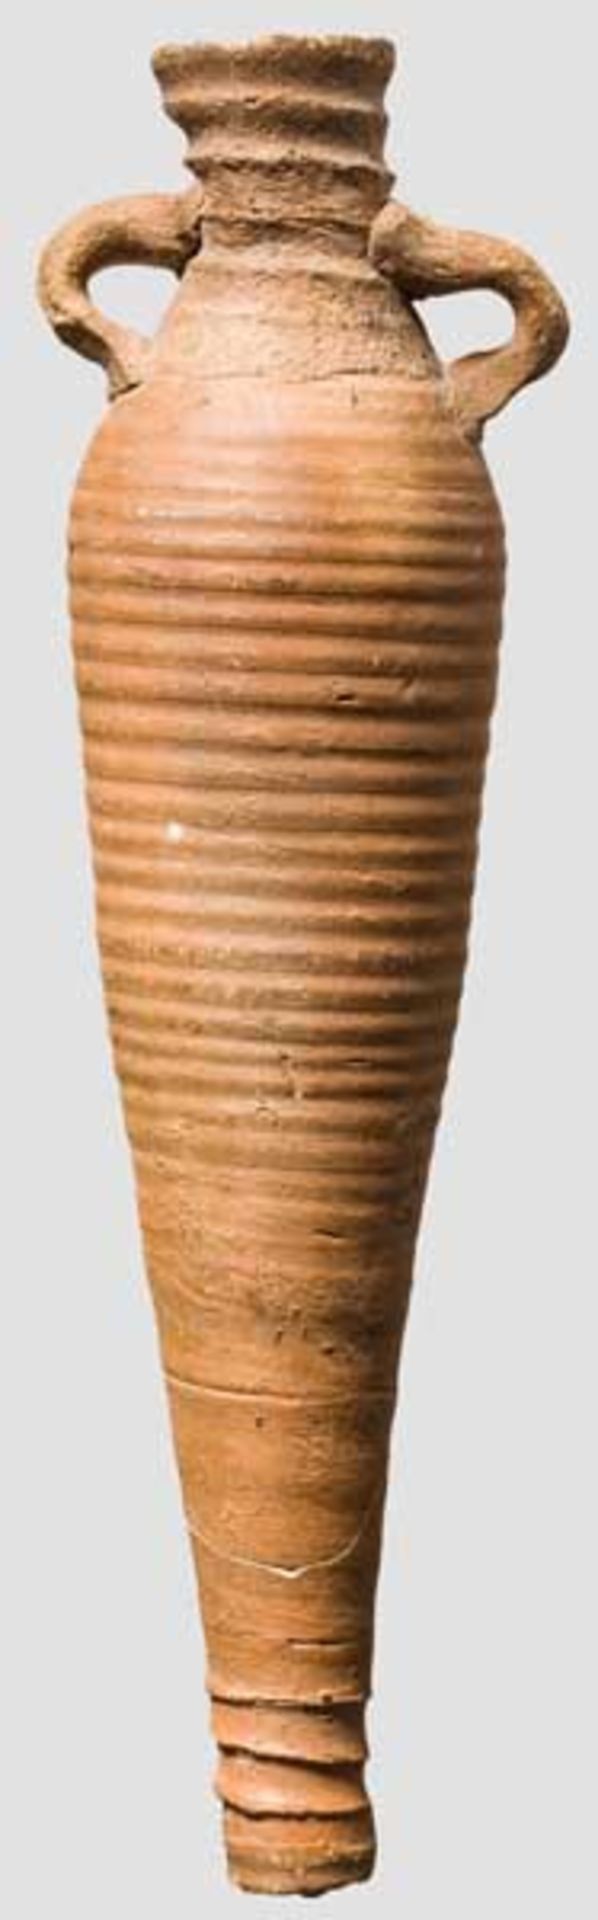 Spätantike Amphore, ägyptisch, 5. - 7. Jhd. Kleine, spindelförmige Amphore aus rotbraunem Ton mit - Bild 2 aus 2